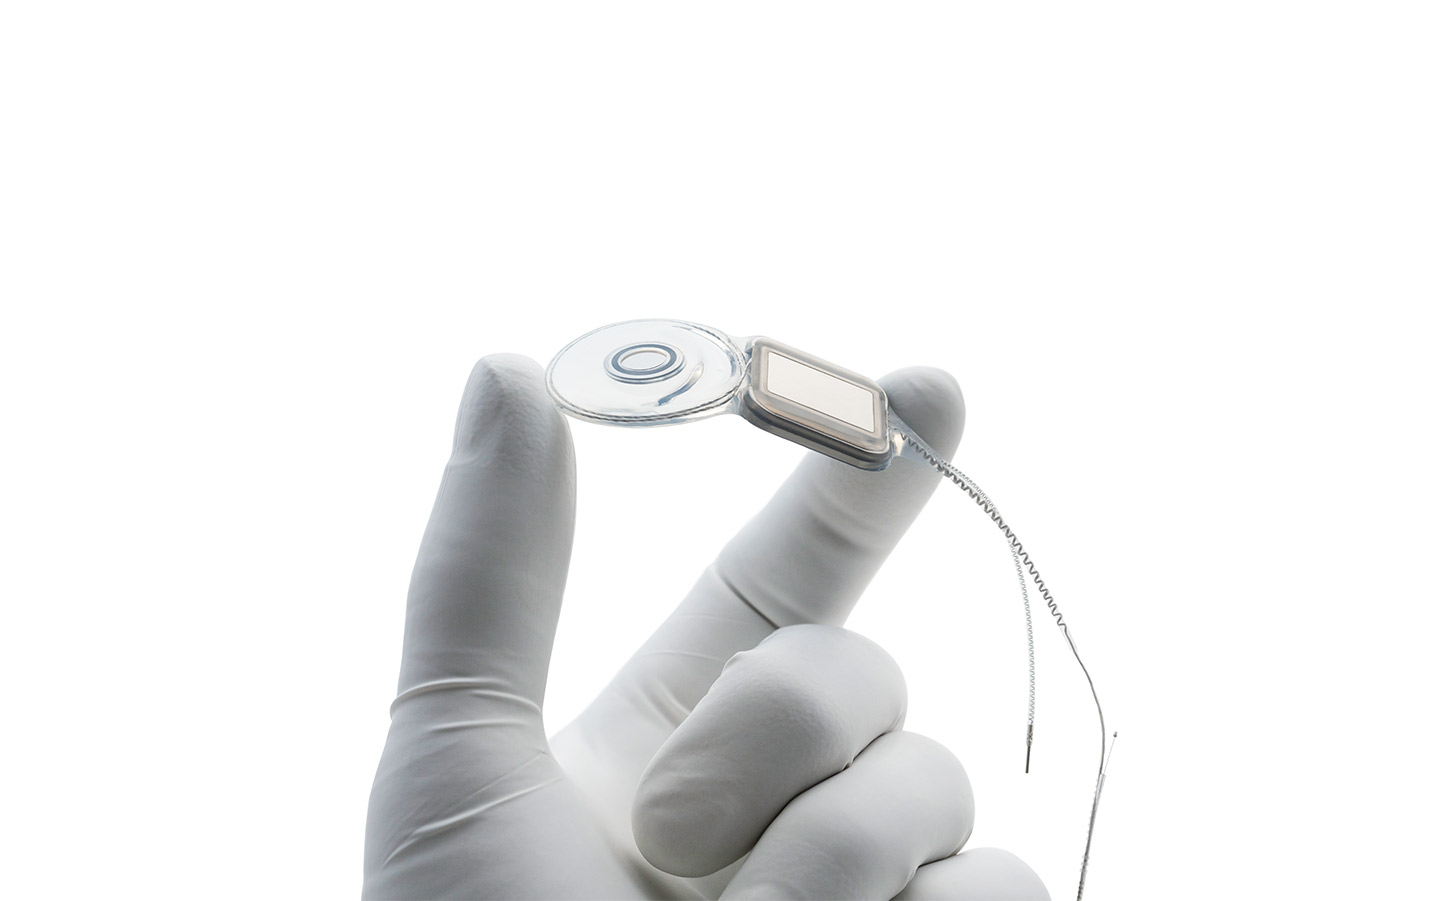 La main d’un chirurgien portant un gant en latex tient un implant Nucleus